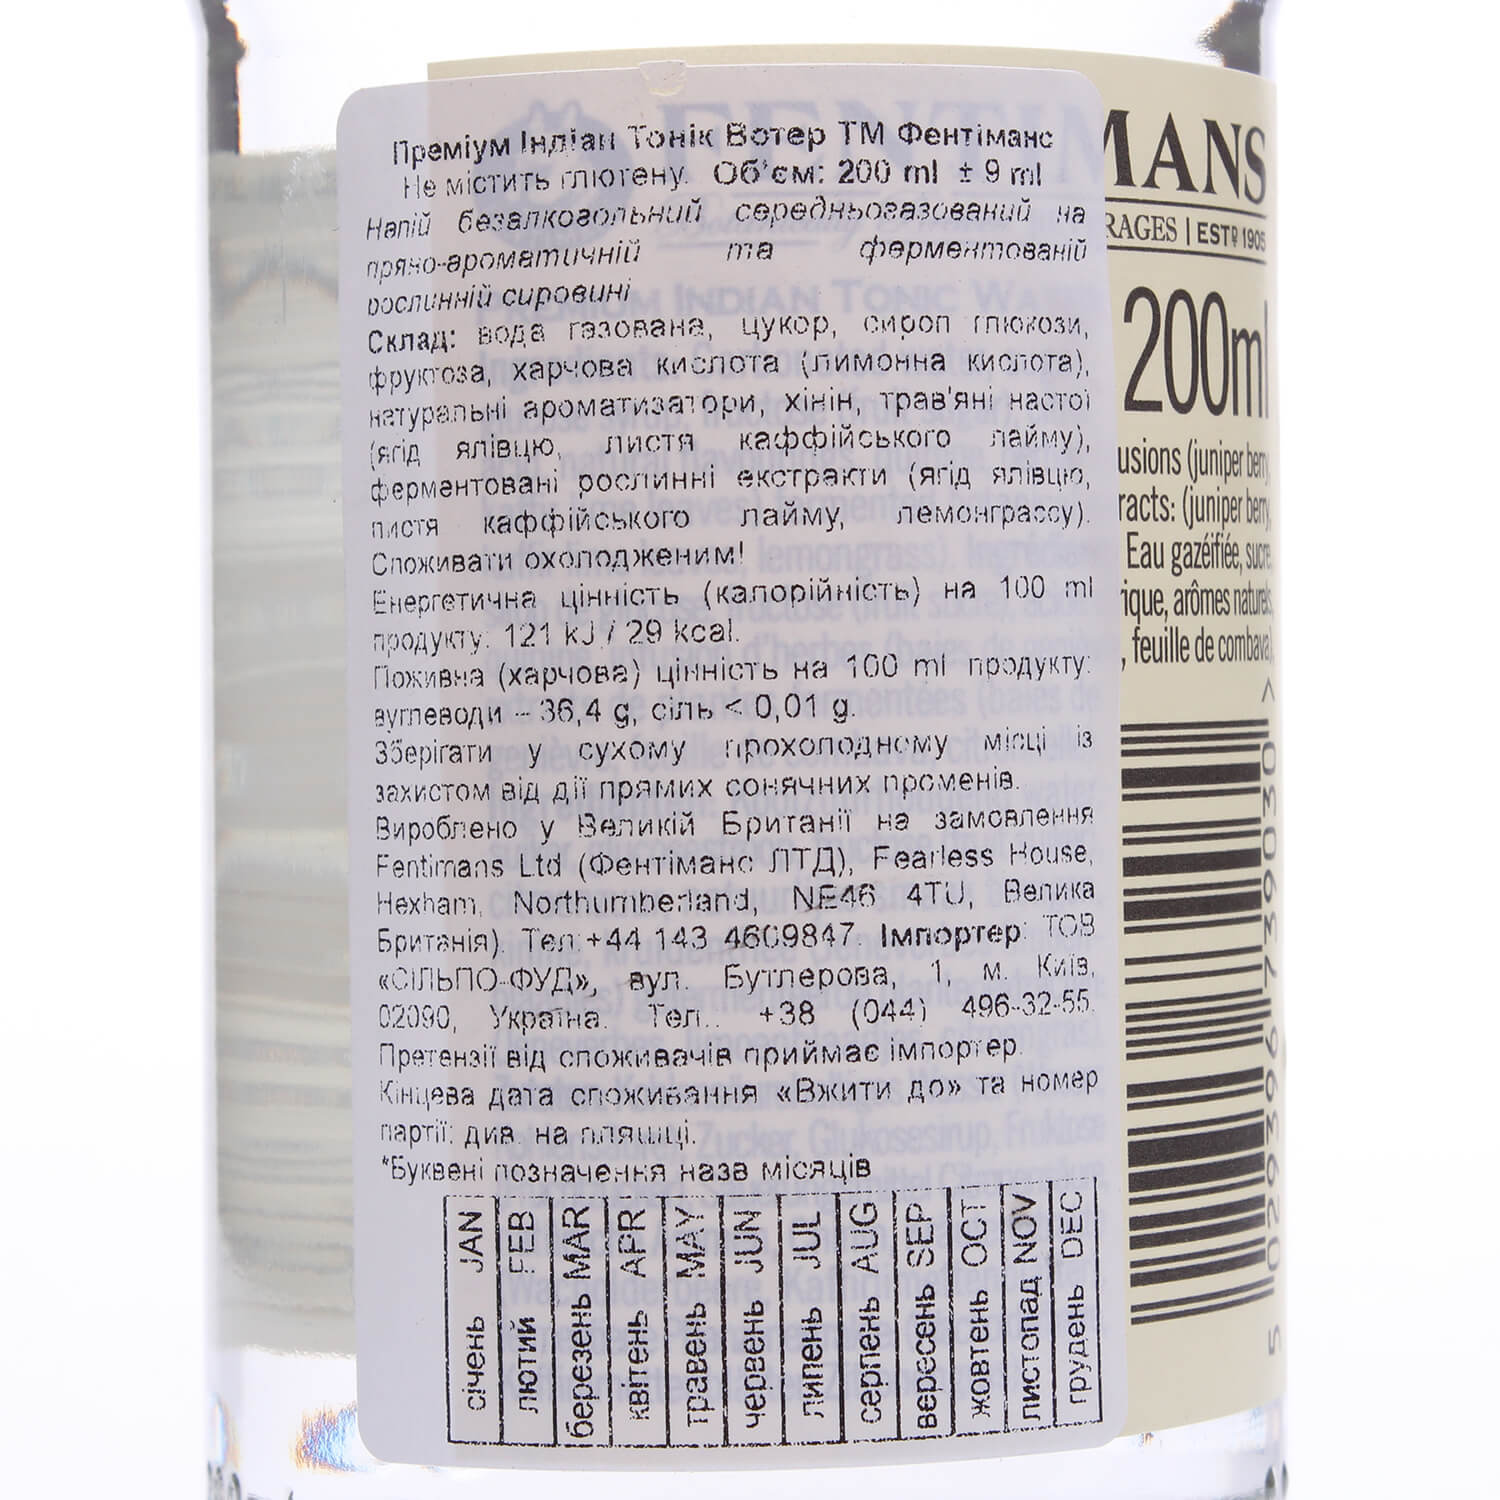 Напиток Fentimans Premium Indian Tonic Water безалкогольный 200 мл (799377) - фото 3